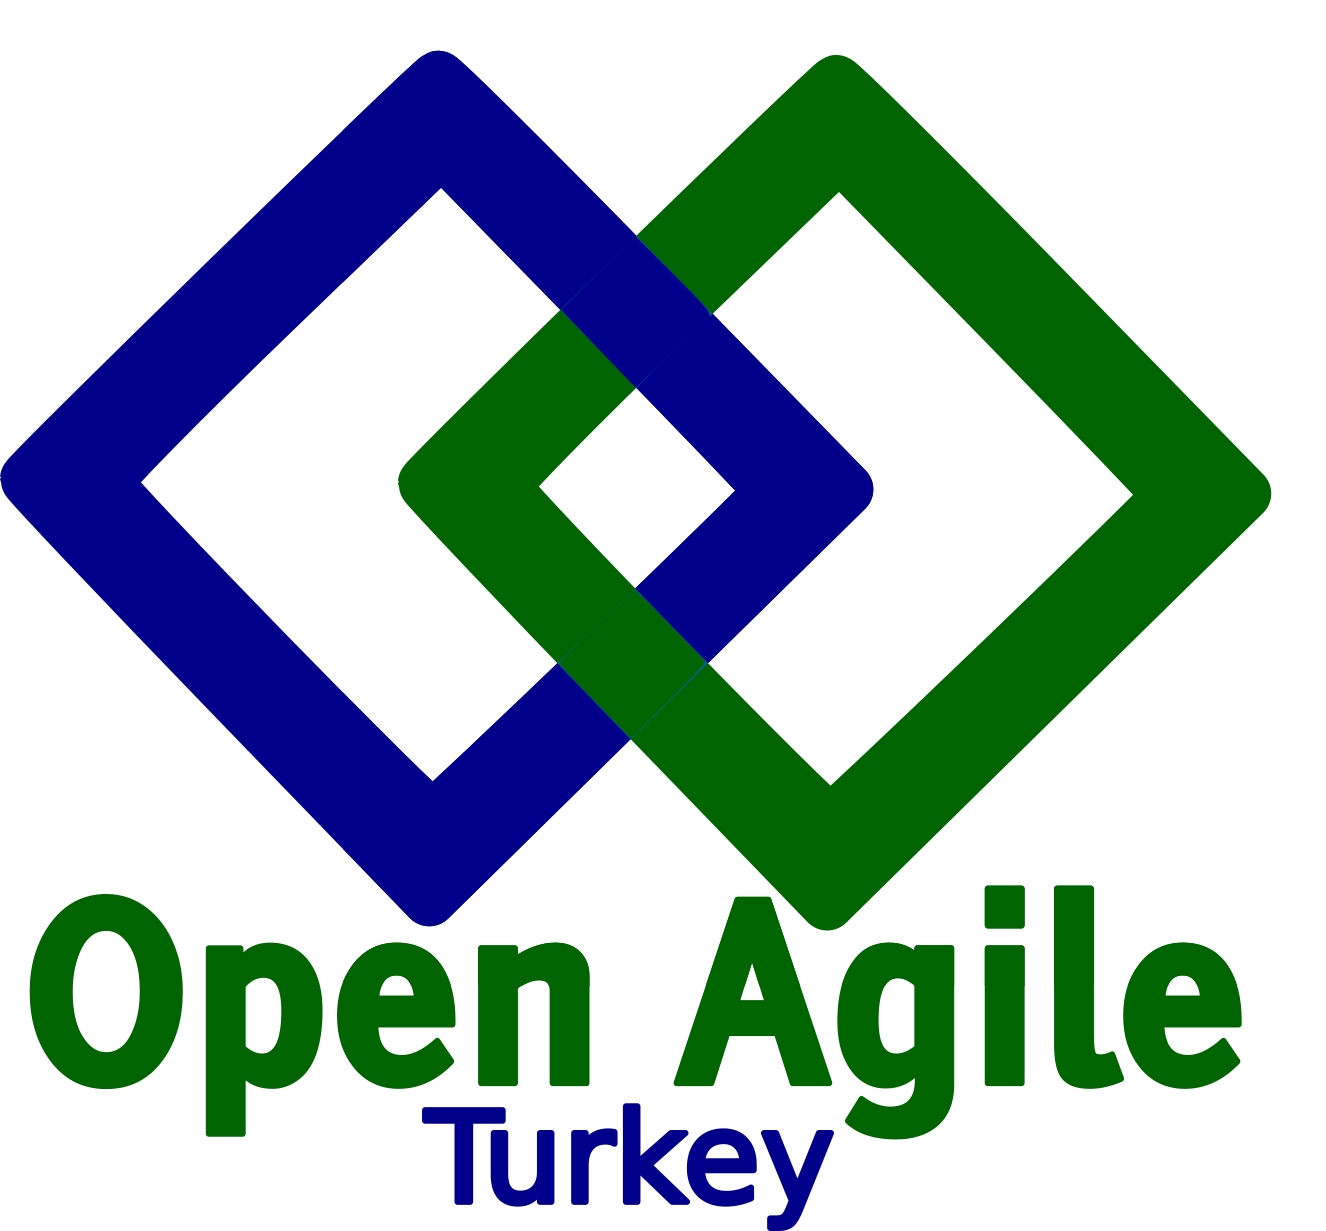 Open Agile